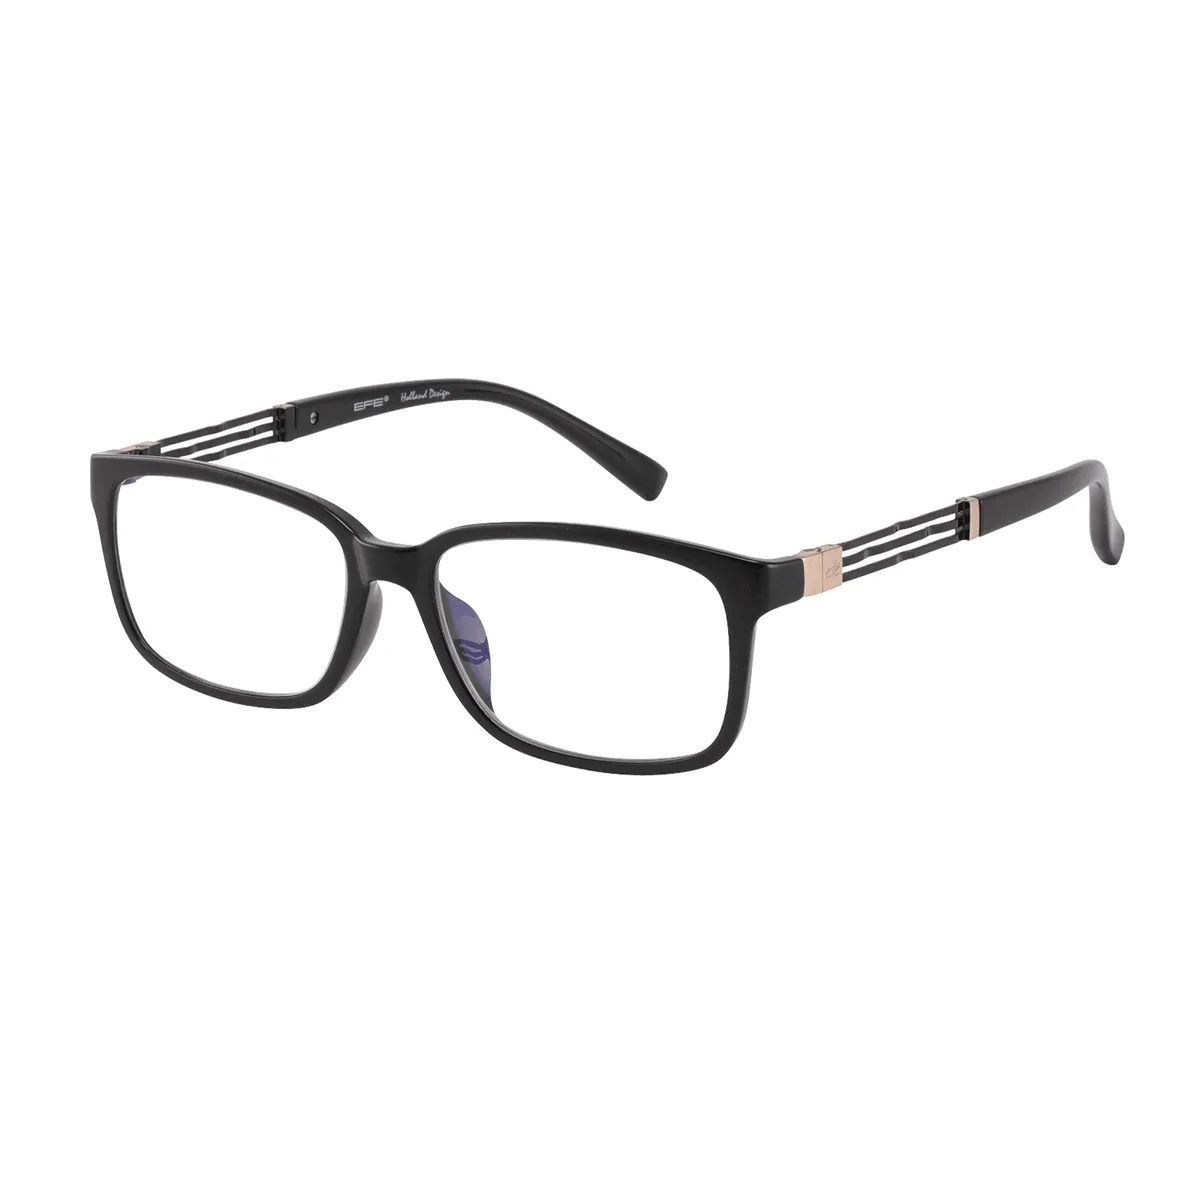 Melvin - Rectangle Black Glasses for Men & Women